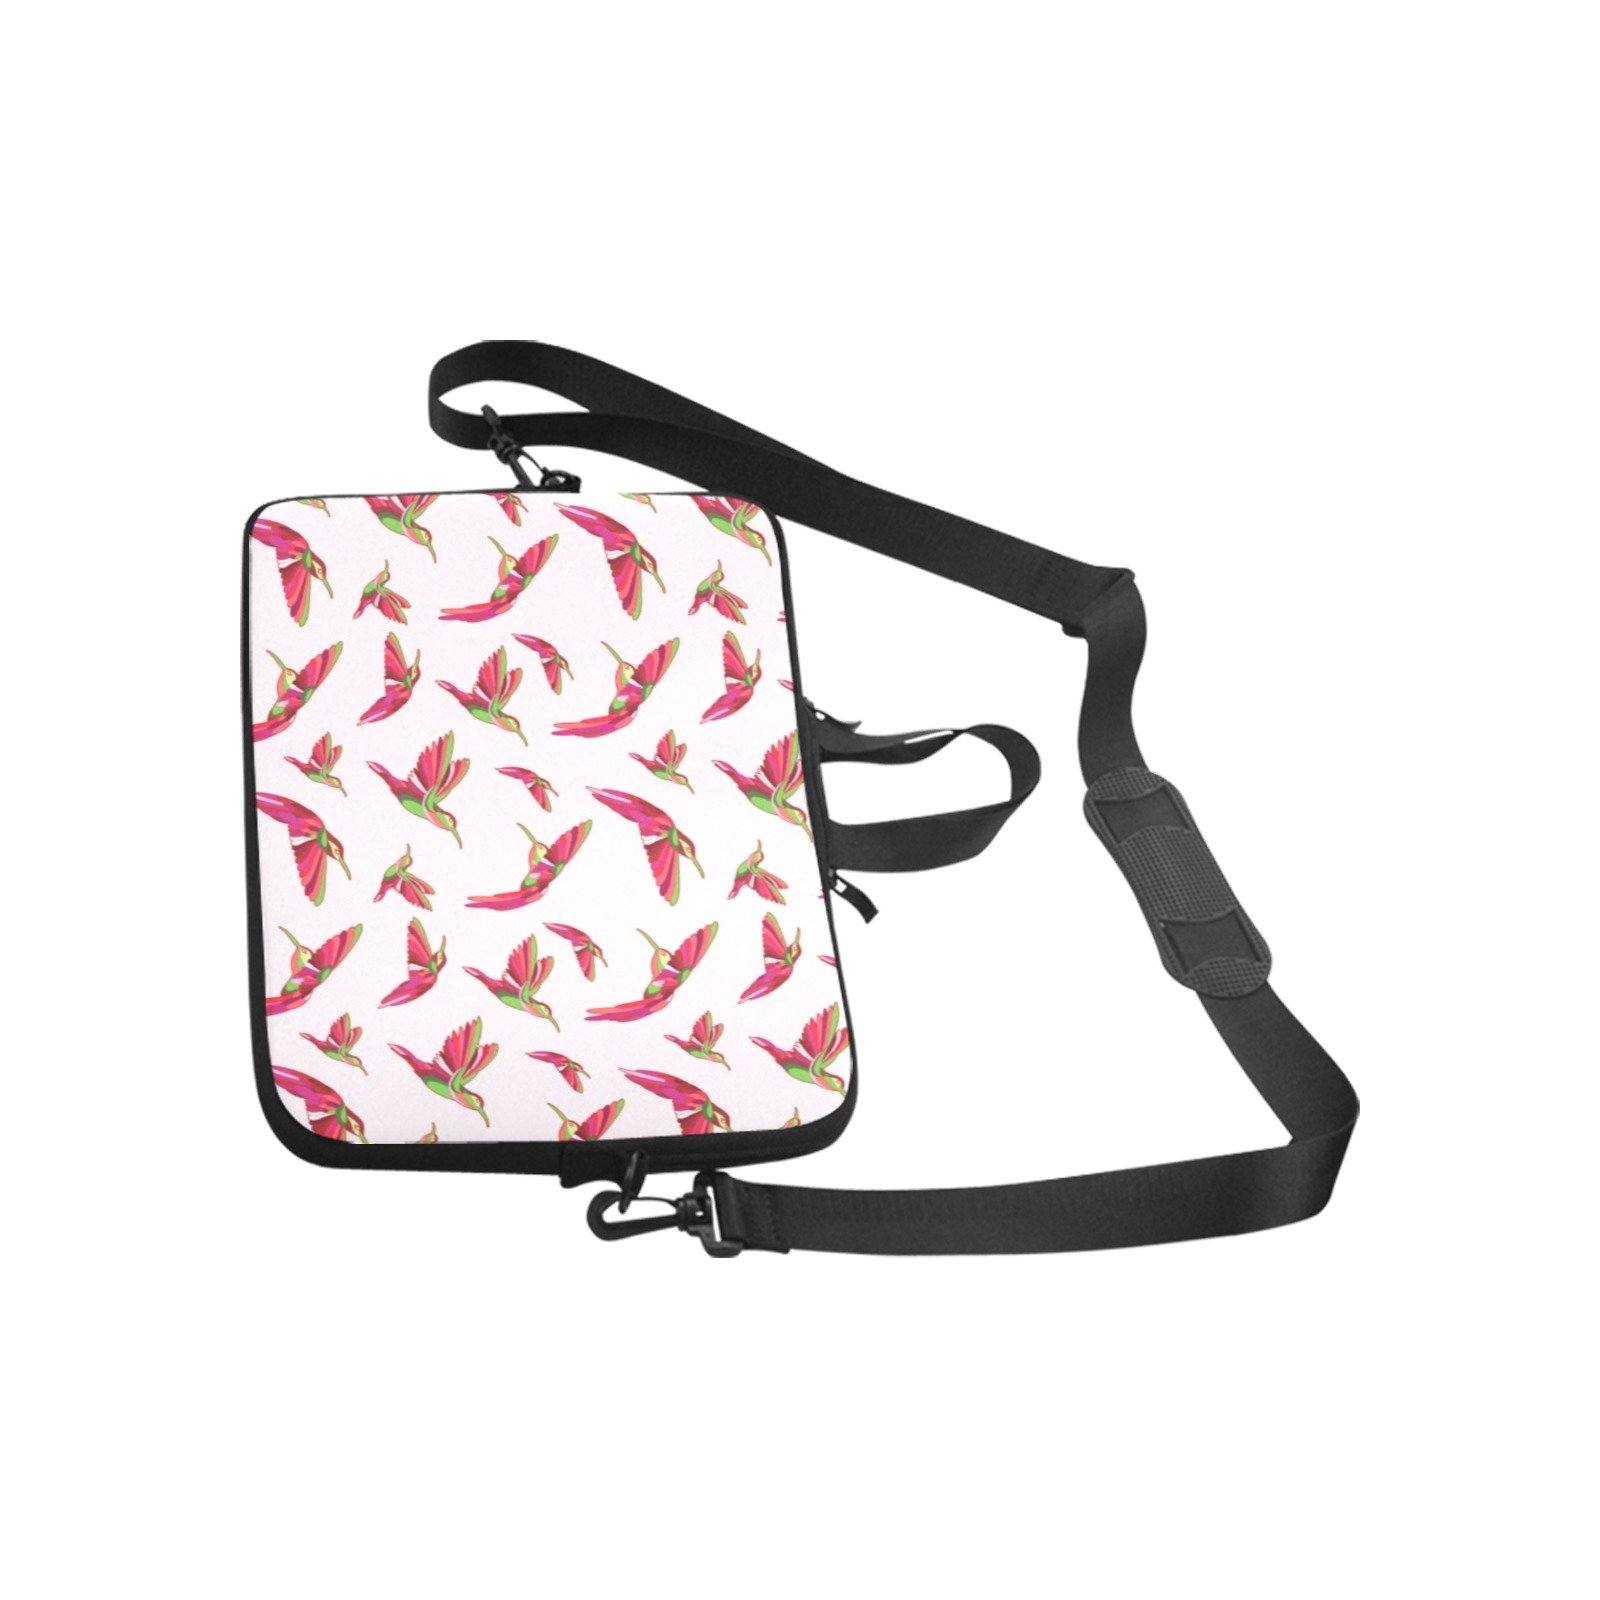 Red Swift Colourful Laptop Handbags 11" bag e-joyer 